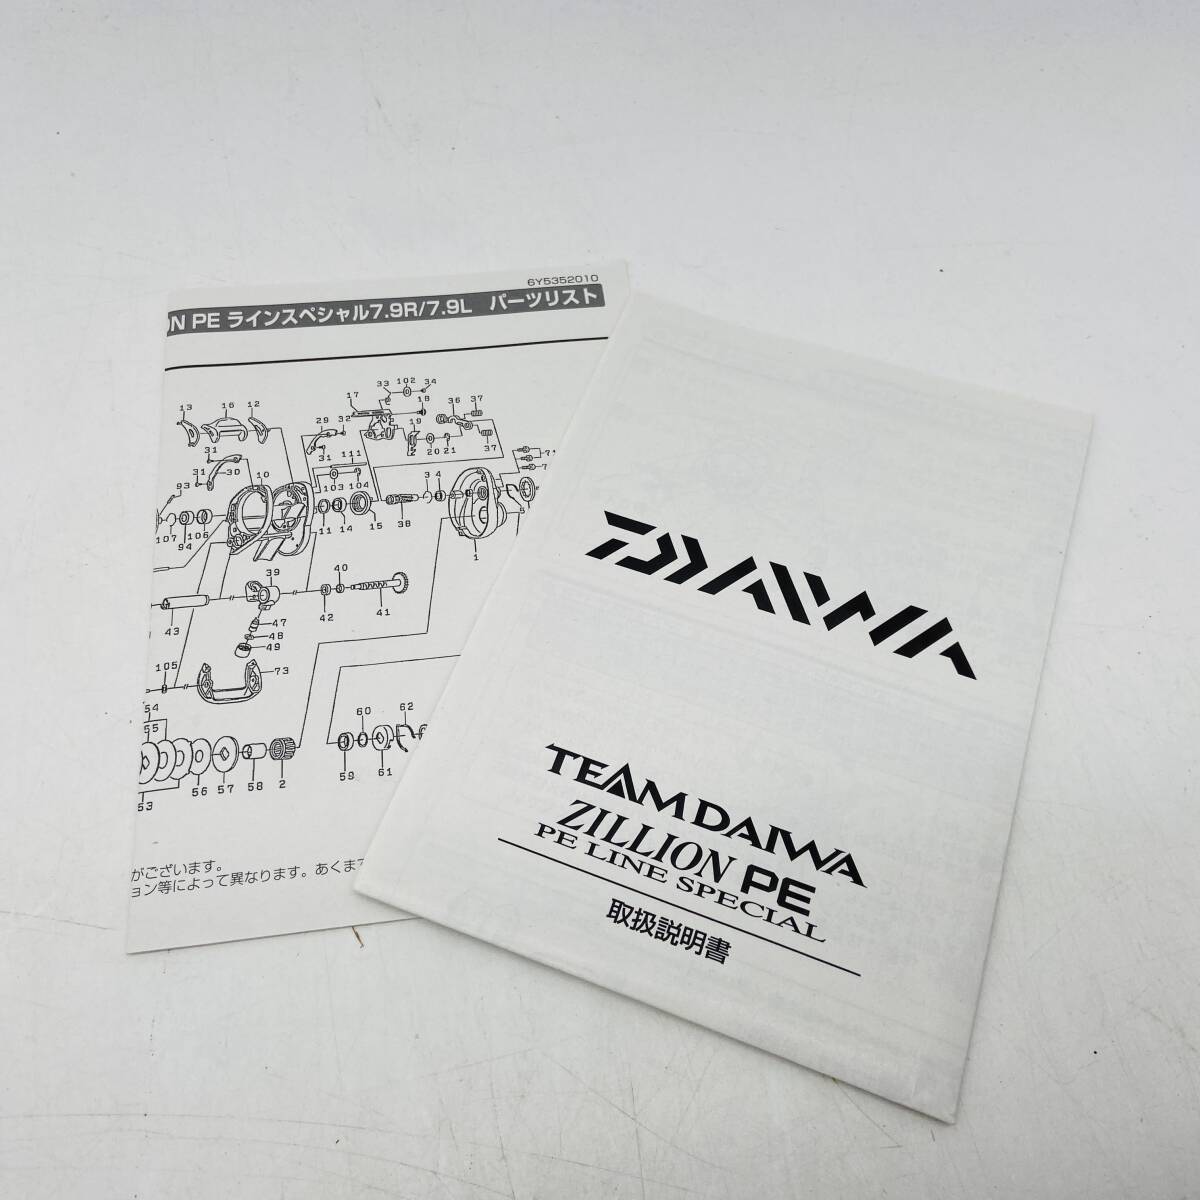 (26470)□【リール】Daiwa TEAM DAIWA ZILLION PE LINE SPECIAL 7.9 [ダイワ/釣り具/ジリオン] 未使用品の画像2